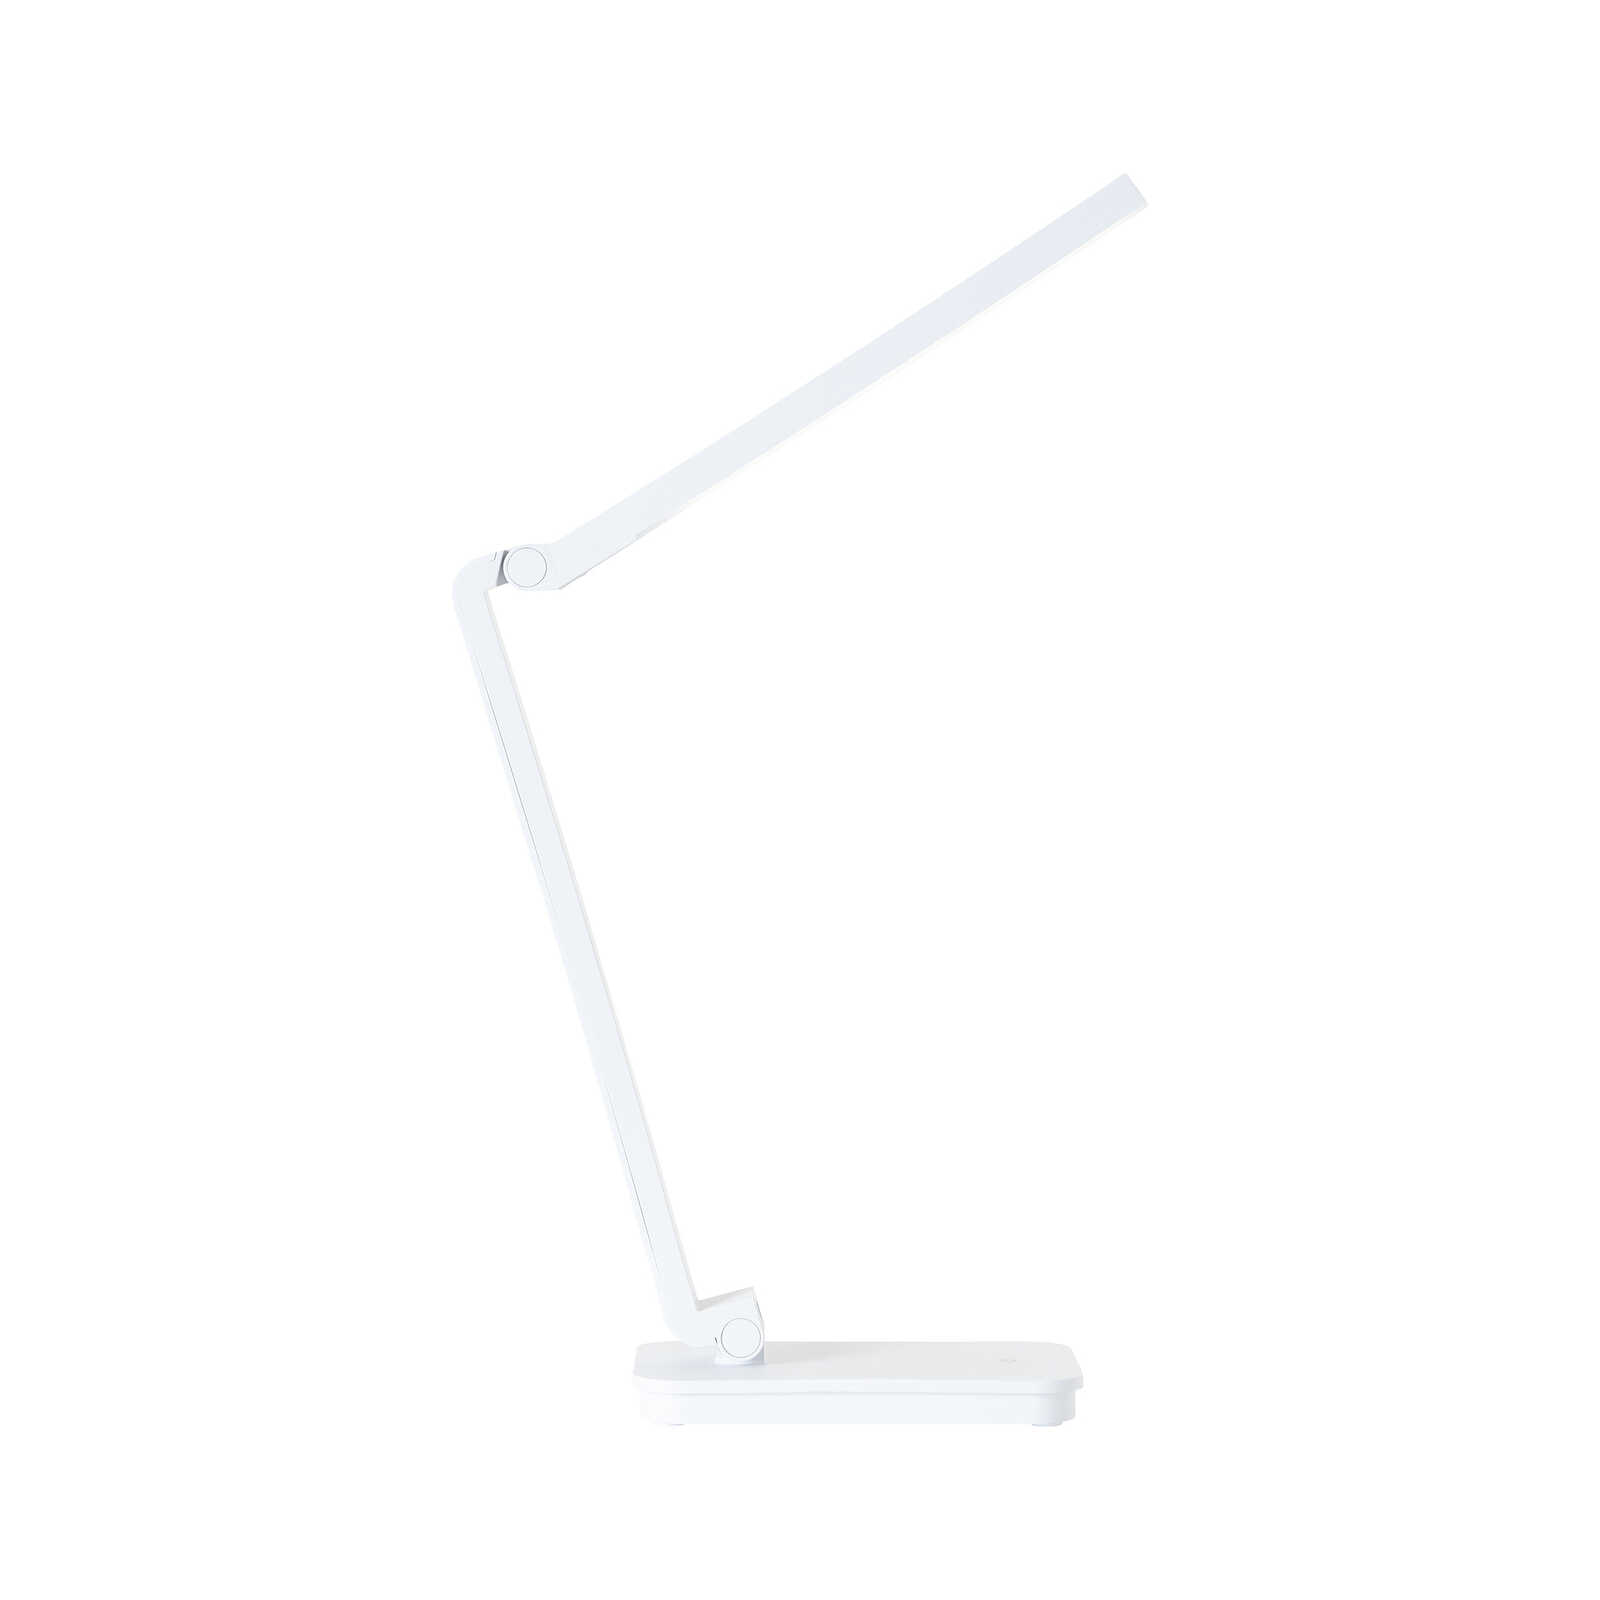 Plastic table lamp - Romy 1 - White
